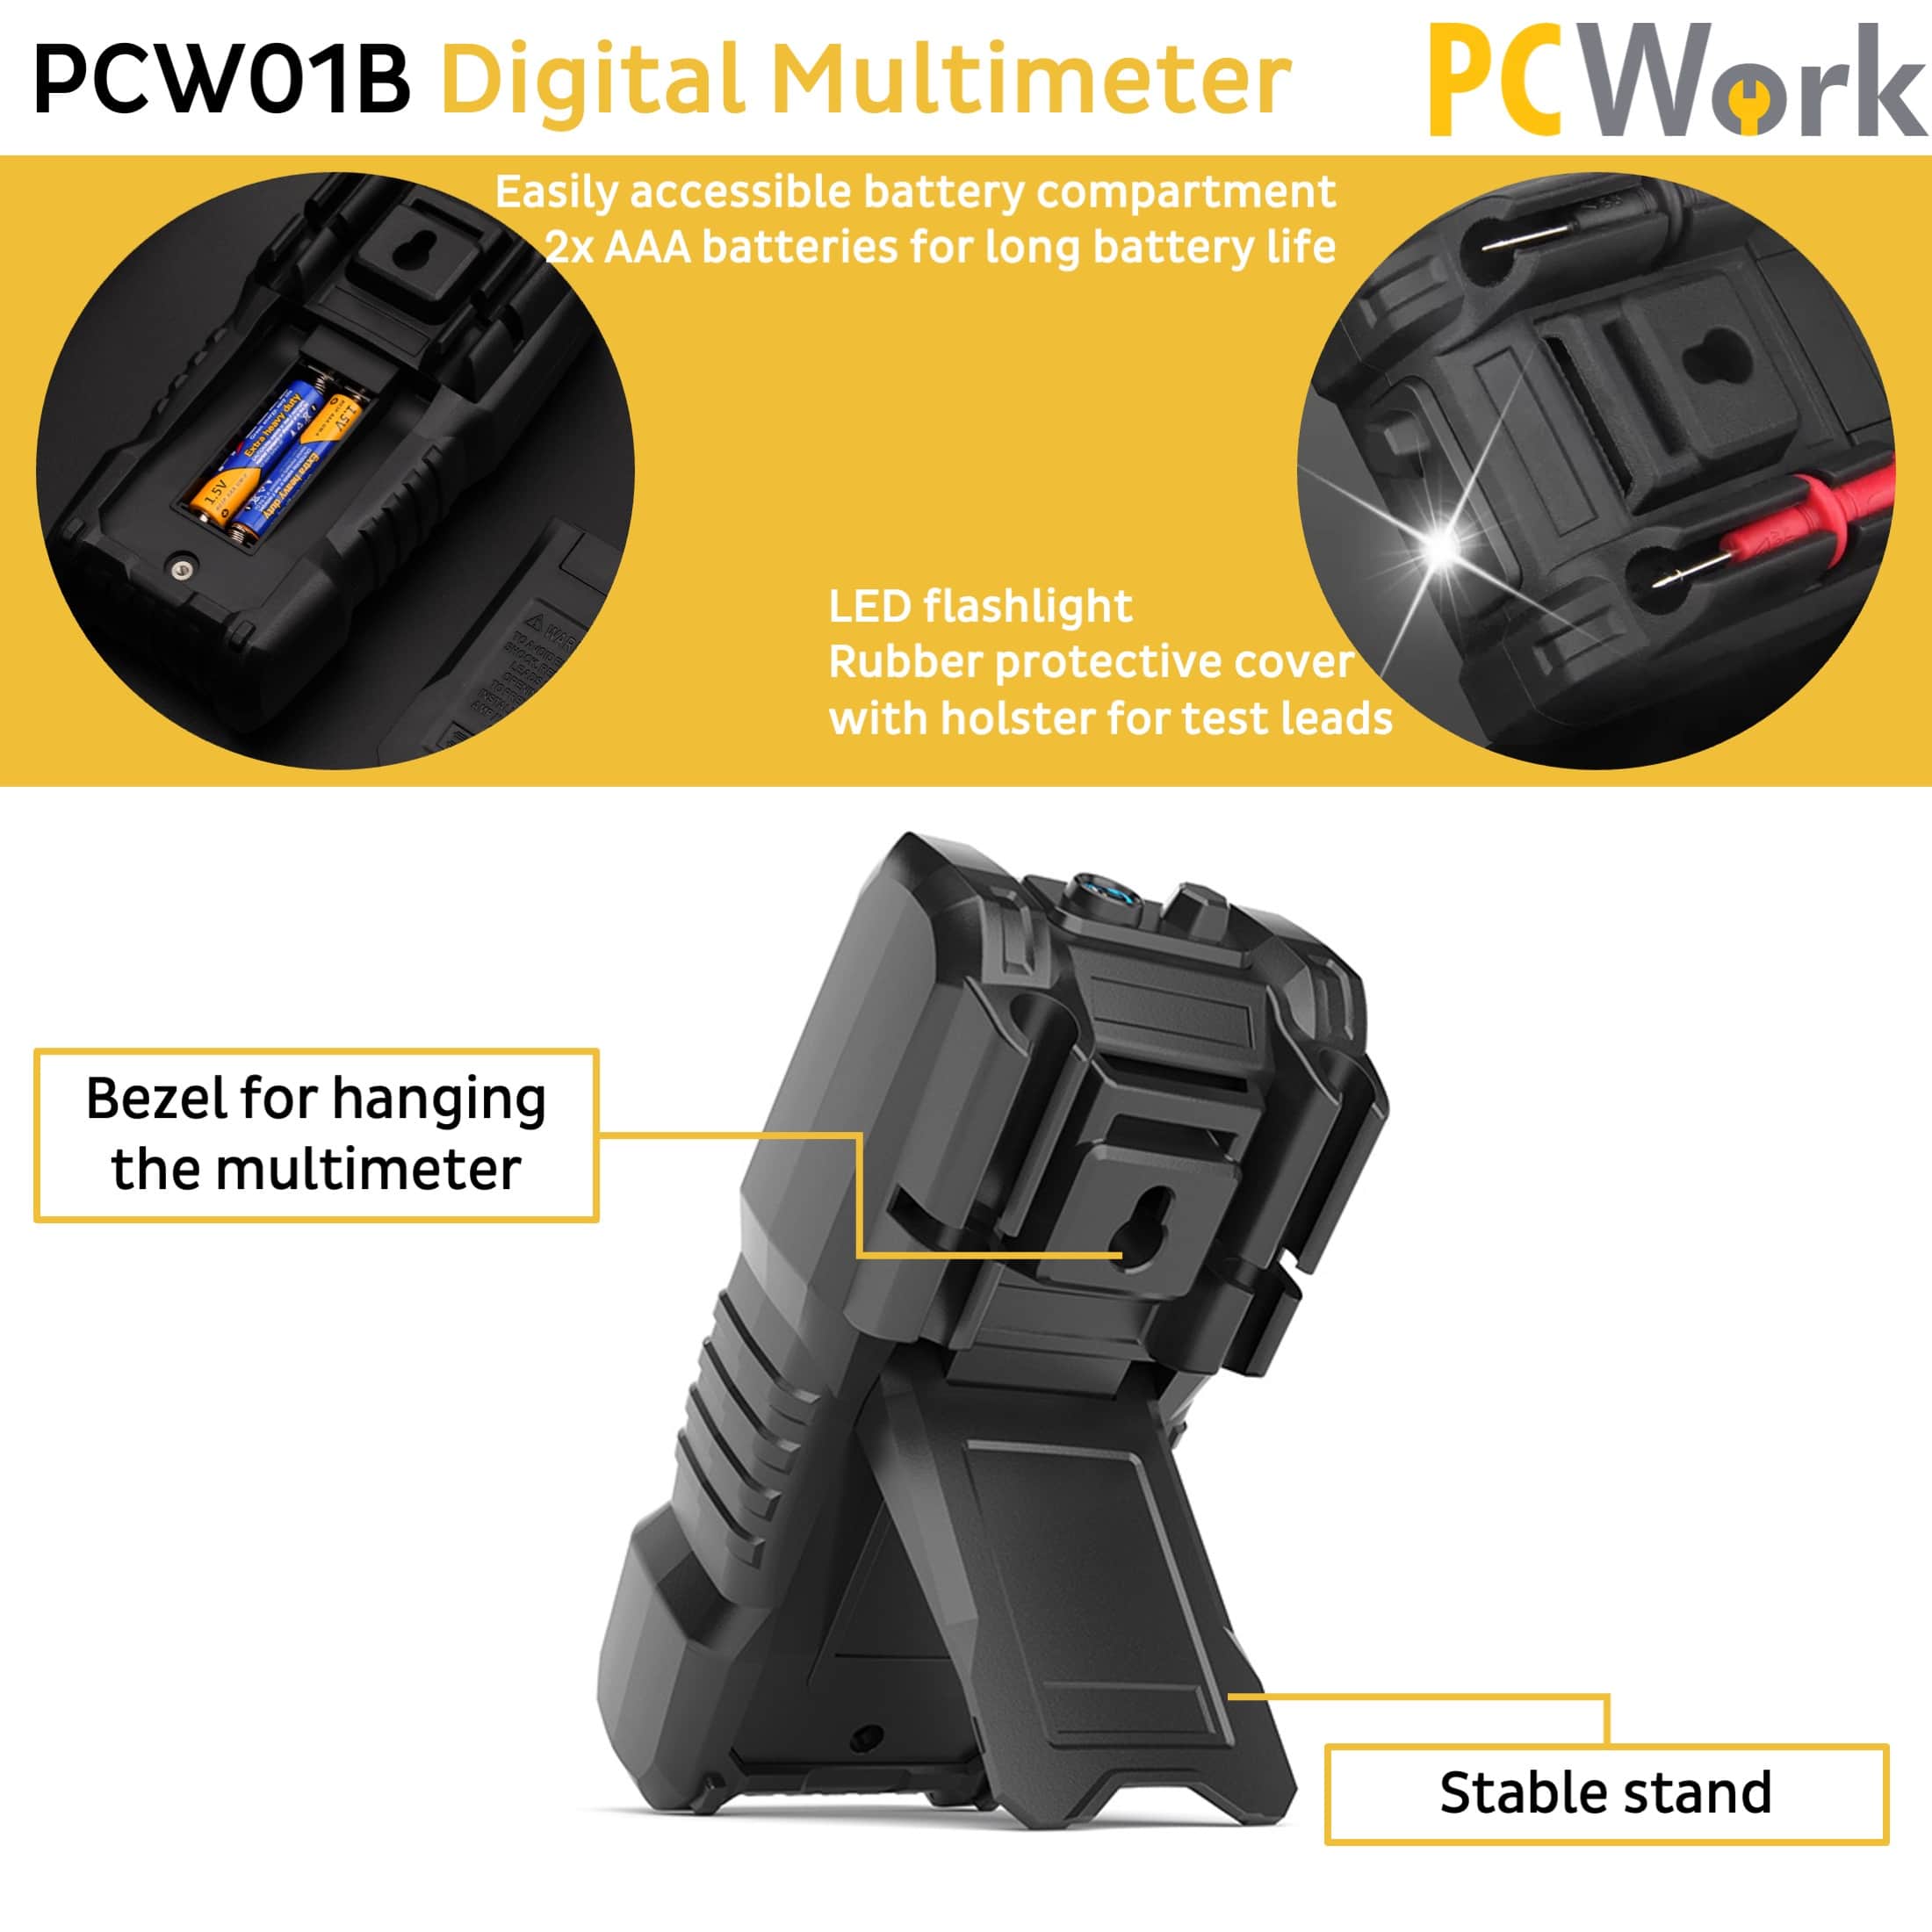 PCW01B Digitalmultimeter, True RMS, Auto Range